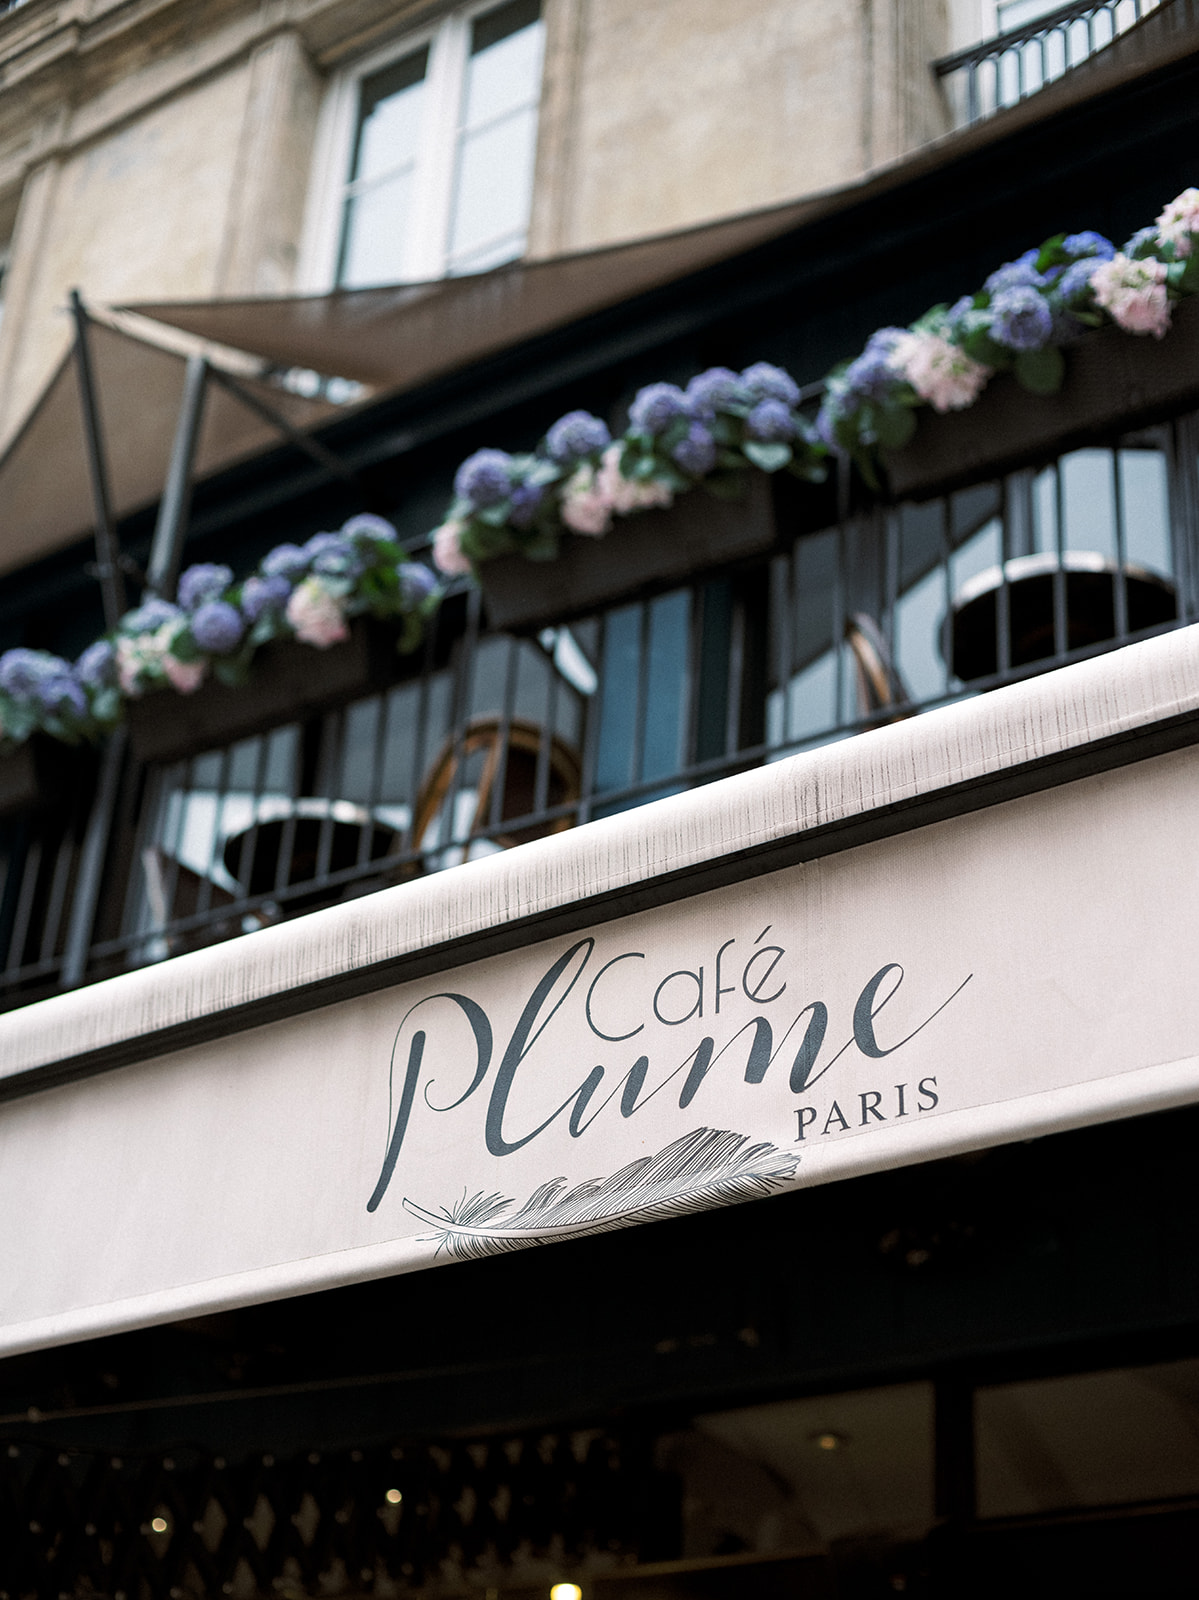 Cafe Plume Paris.